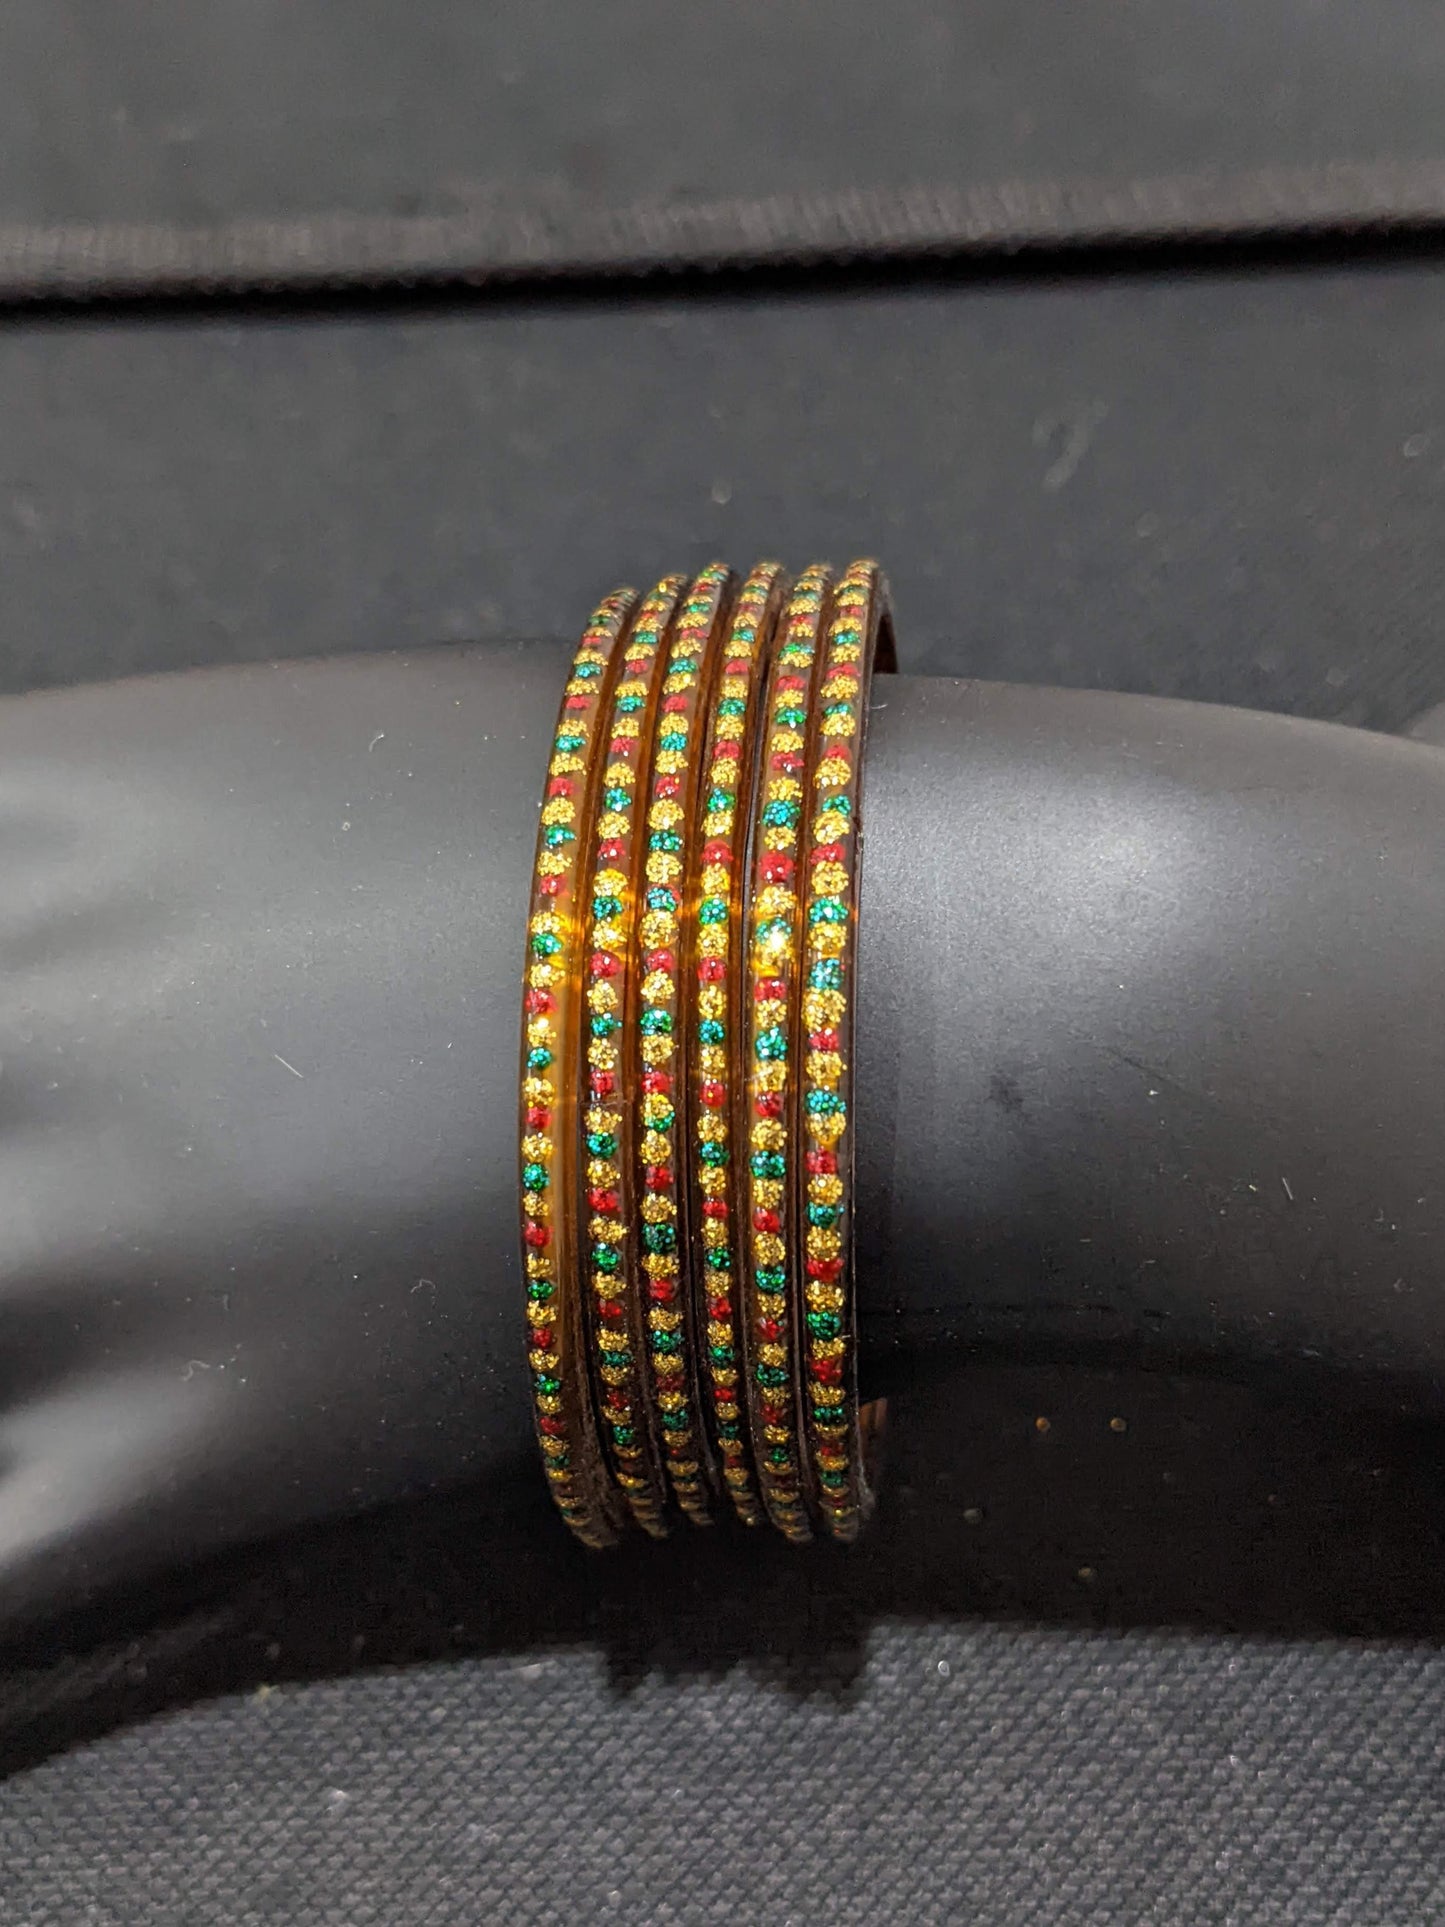 Red Green Gold glitter dot Glass Bangles - Set of 6 bangles / Half dozen bangles